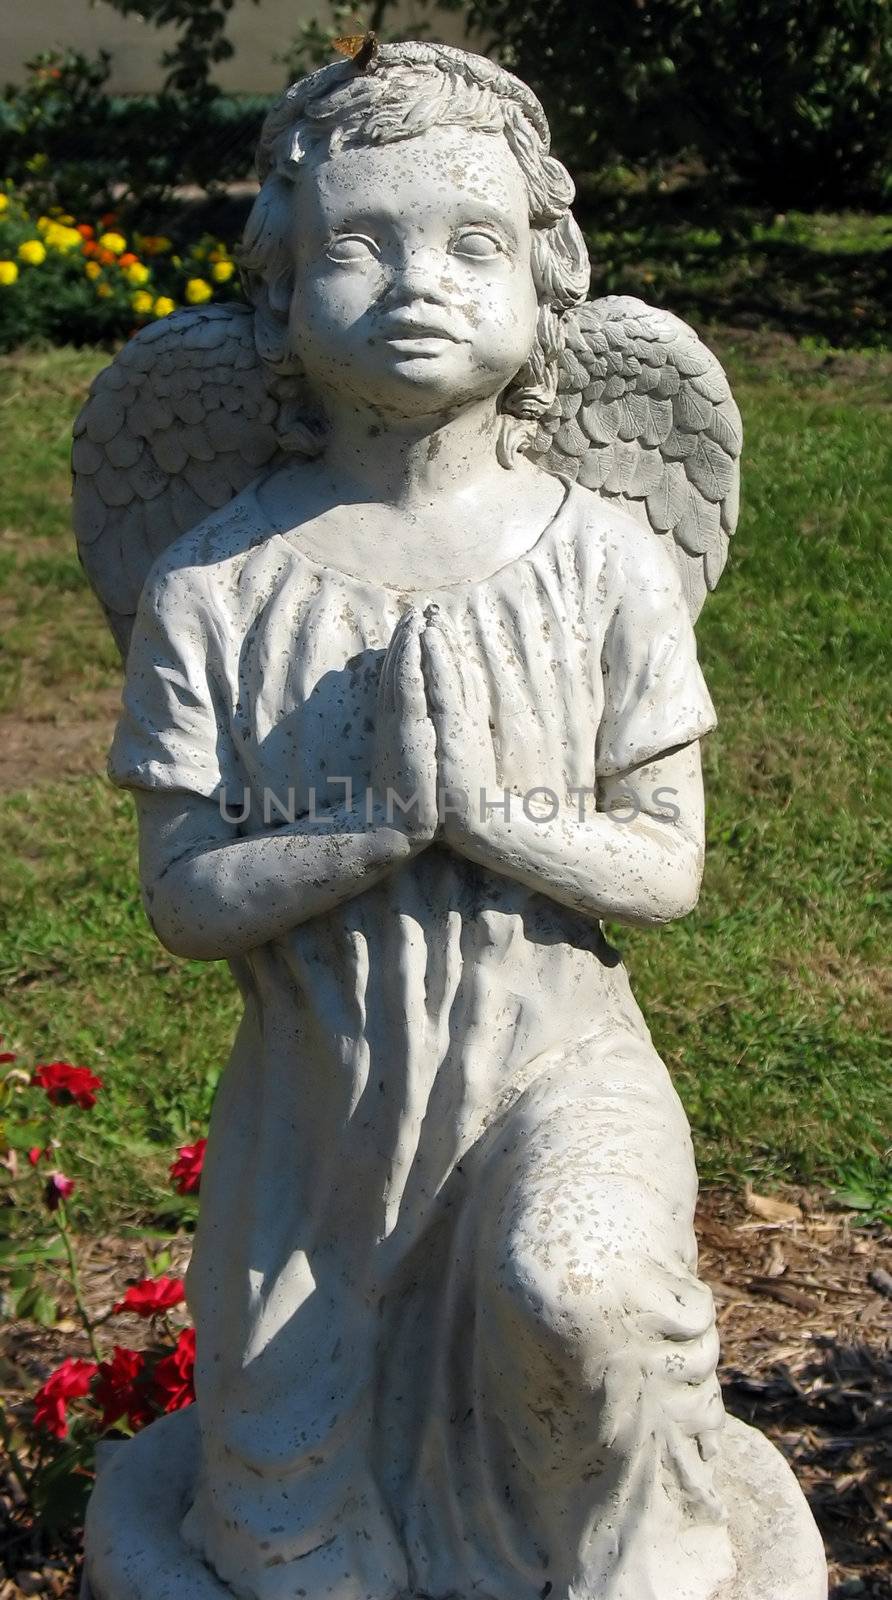 in a garden, an angel statue